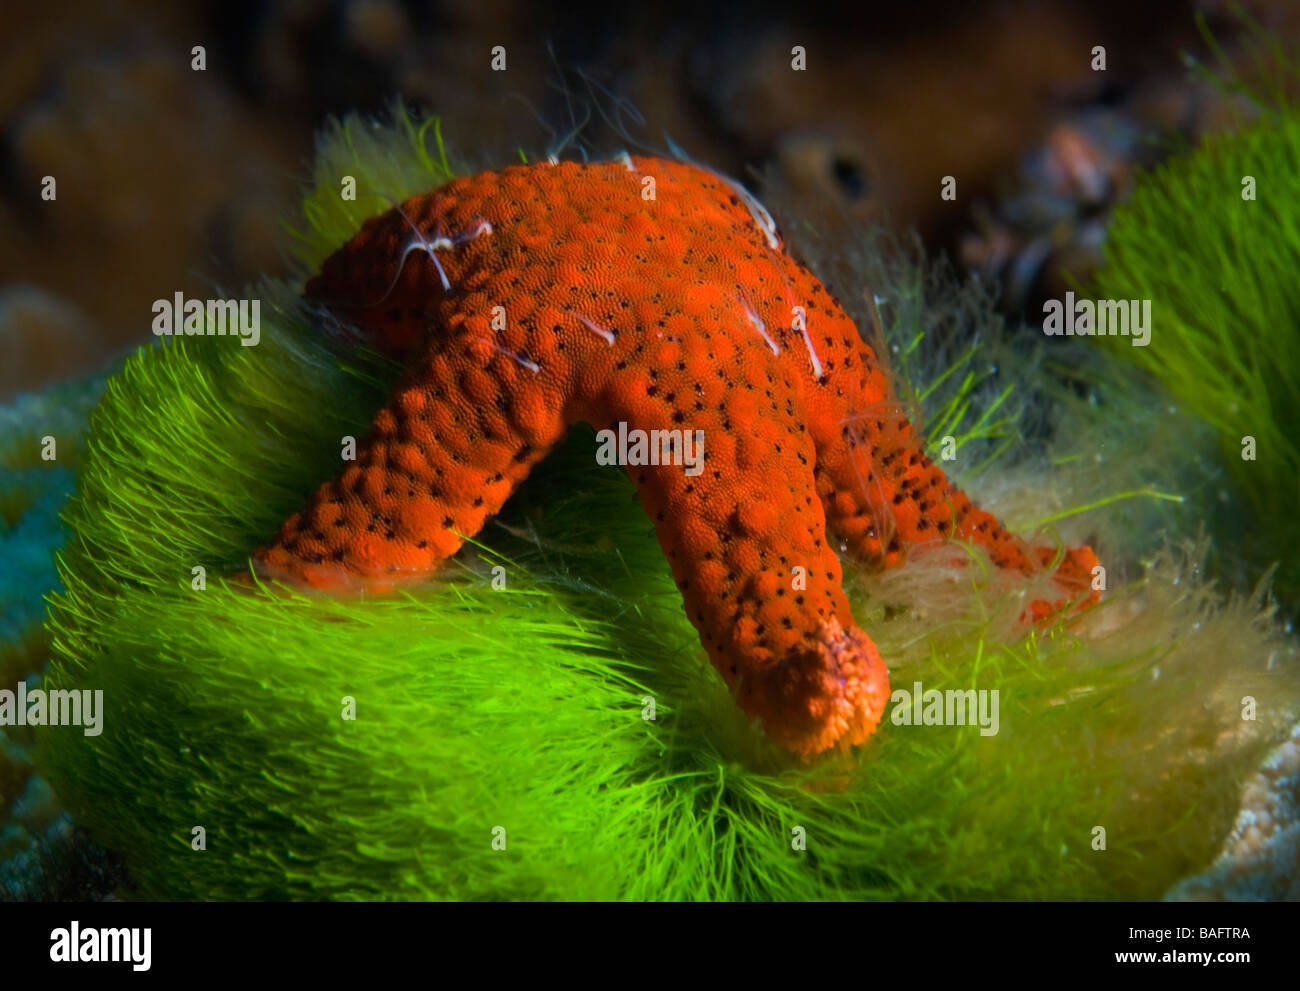 Fiji; Starfish feeding on Algae Stock Photo